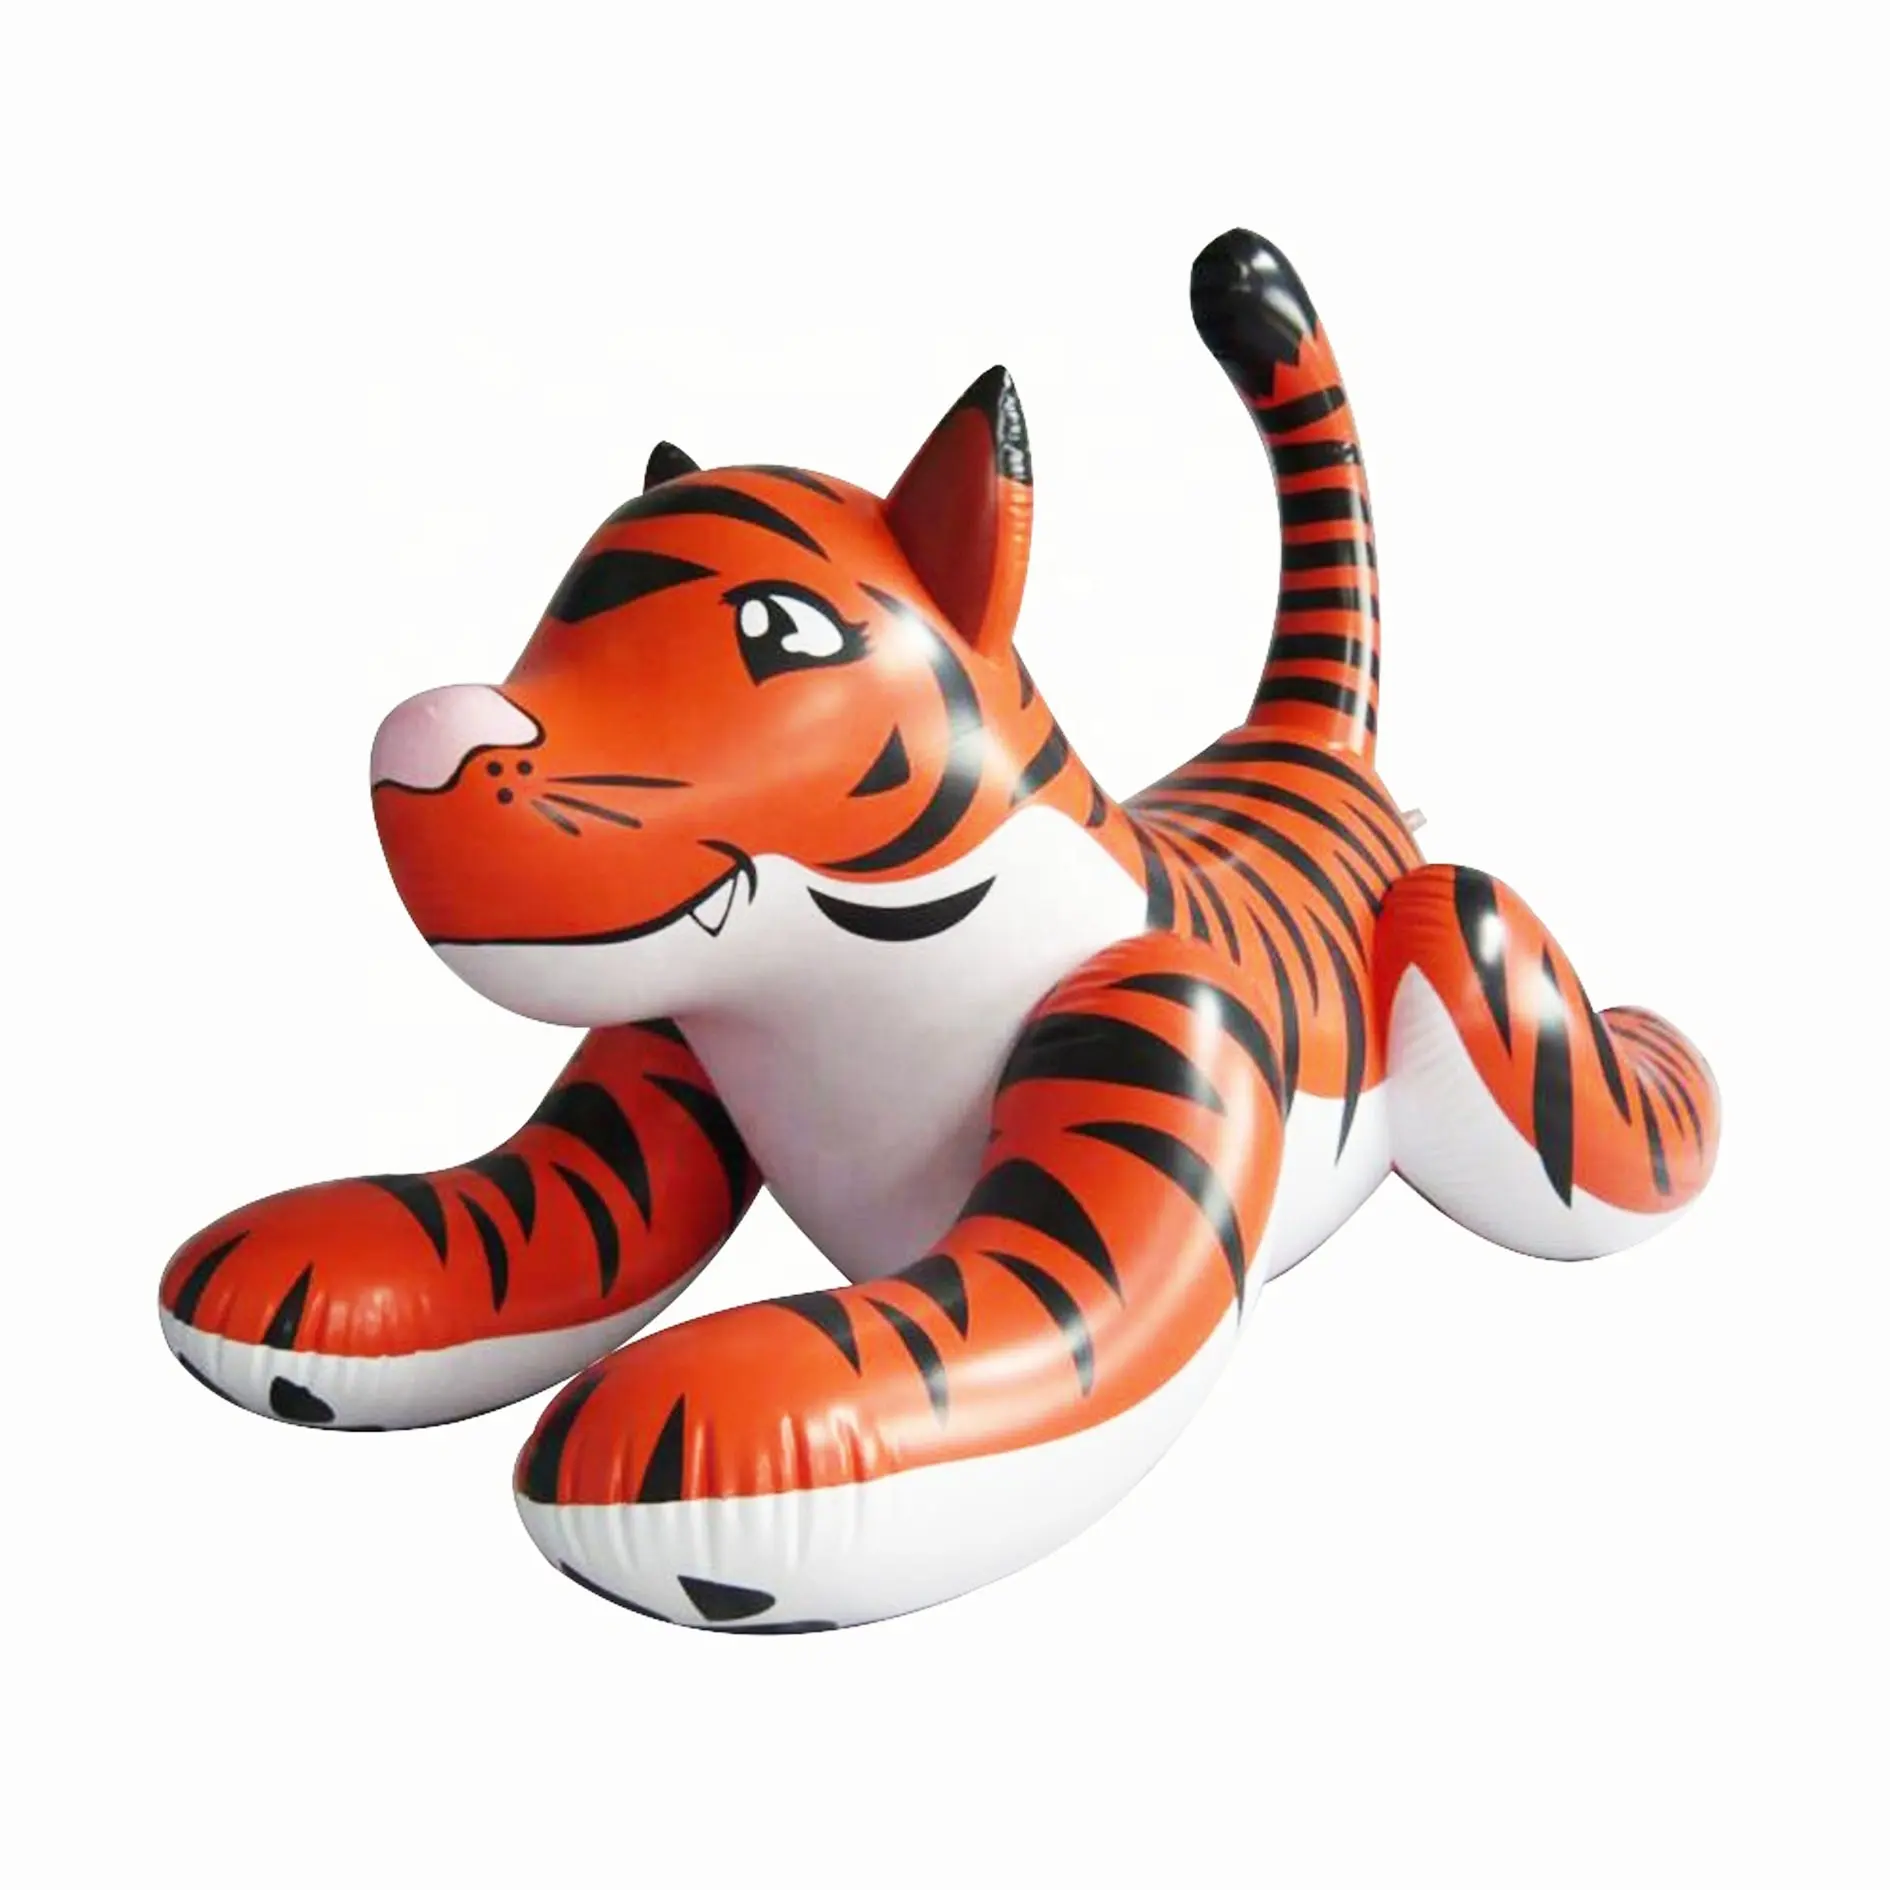 Tigre inflável para anúncios, campanha inflável de pvc de desenho animado animal tigre